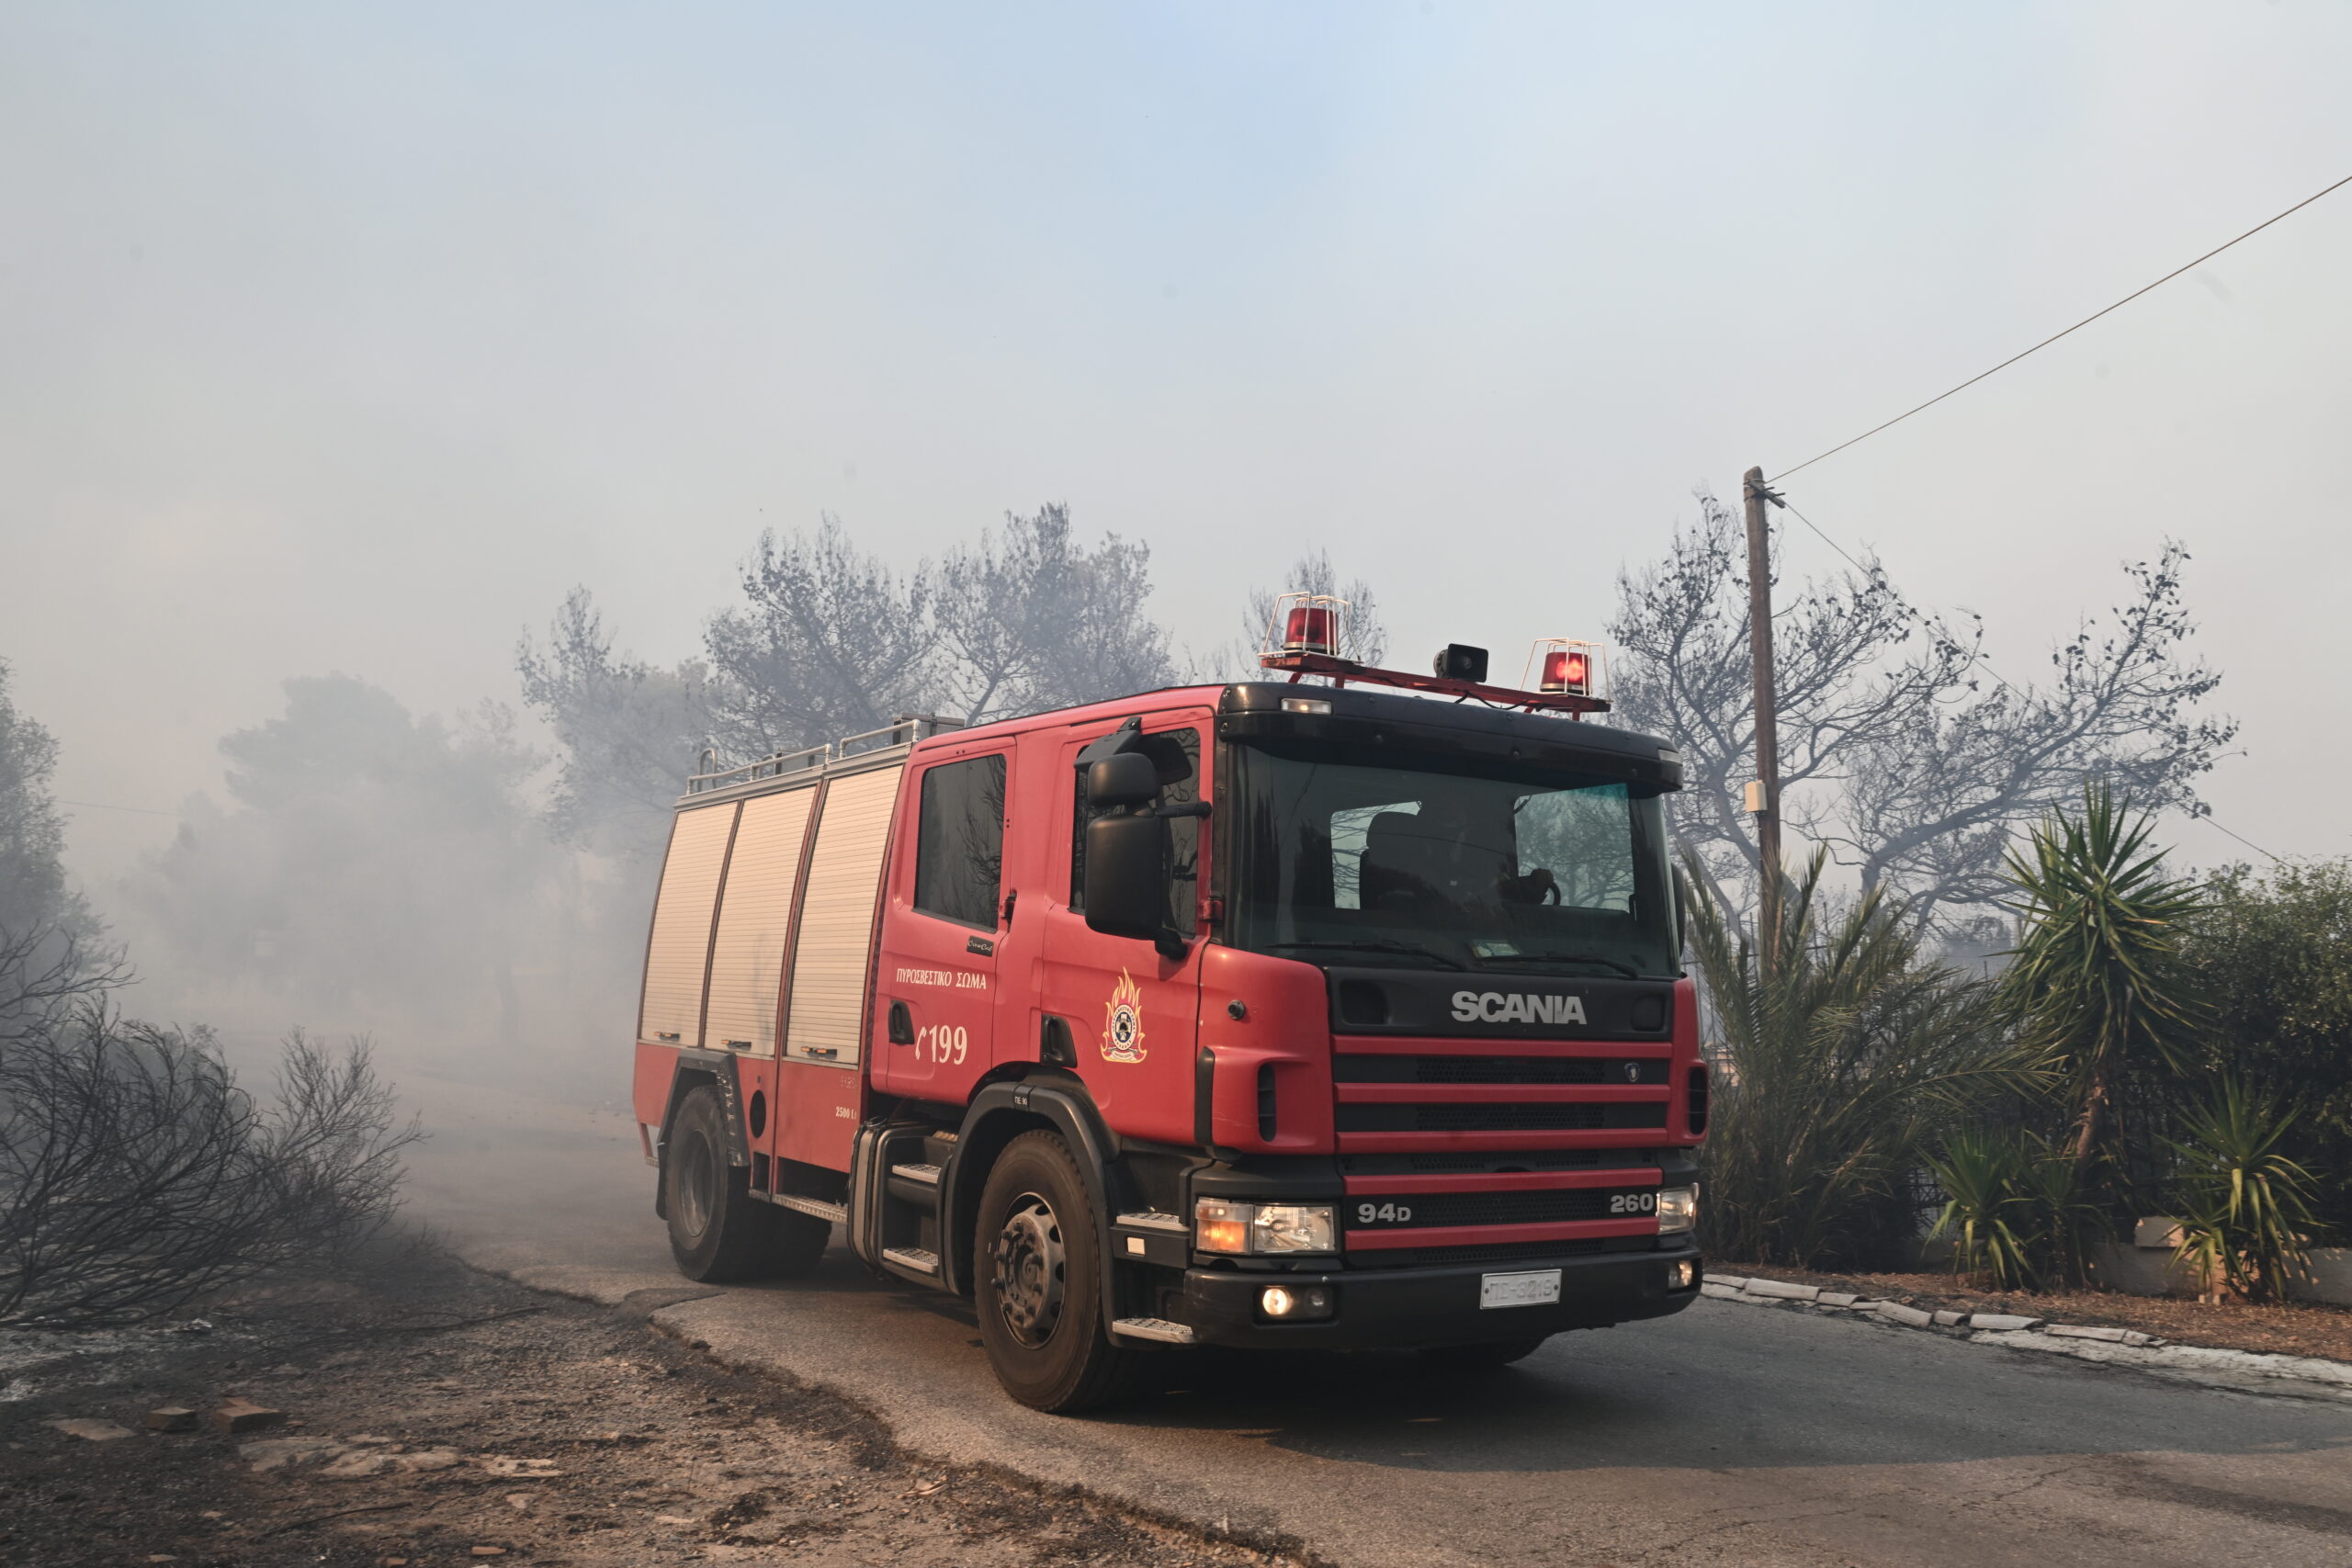 Ν. Μελετίου –  Δήμαρχος Ασπροπύργου: Η φωτιά ξεκίνησε από τις αυτοσχέδιες χωματερές